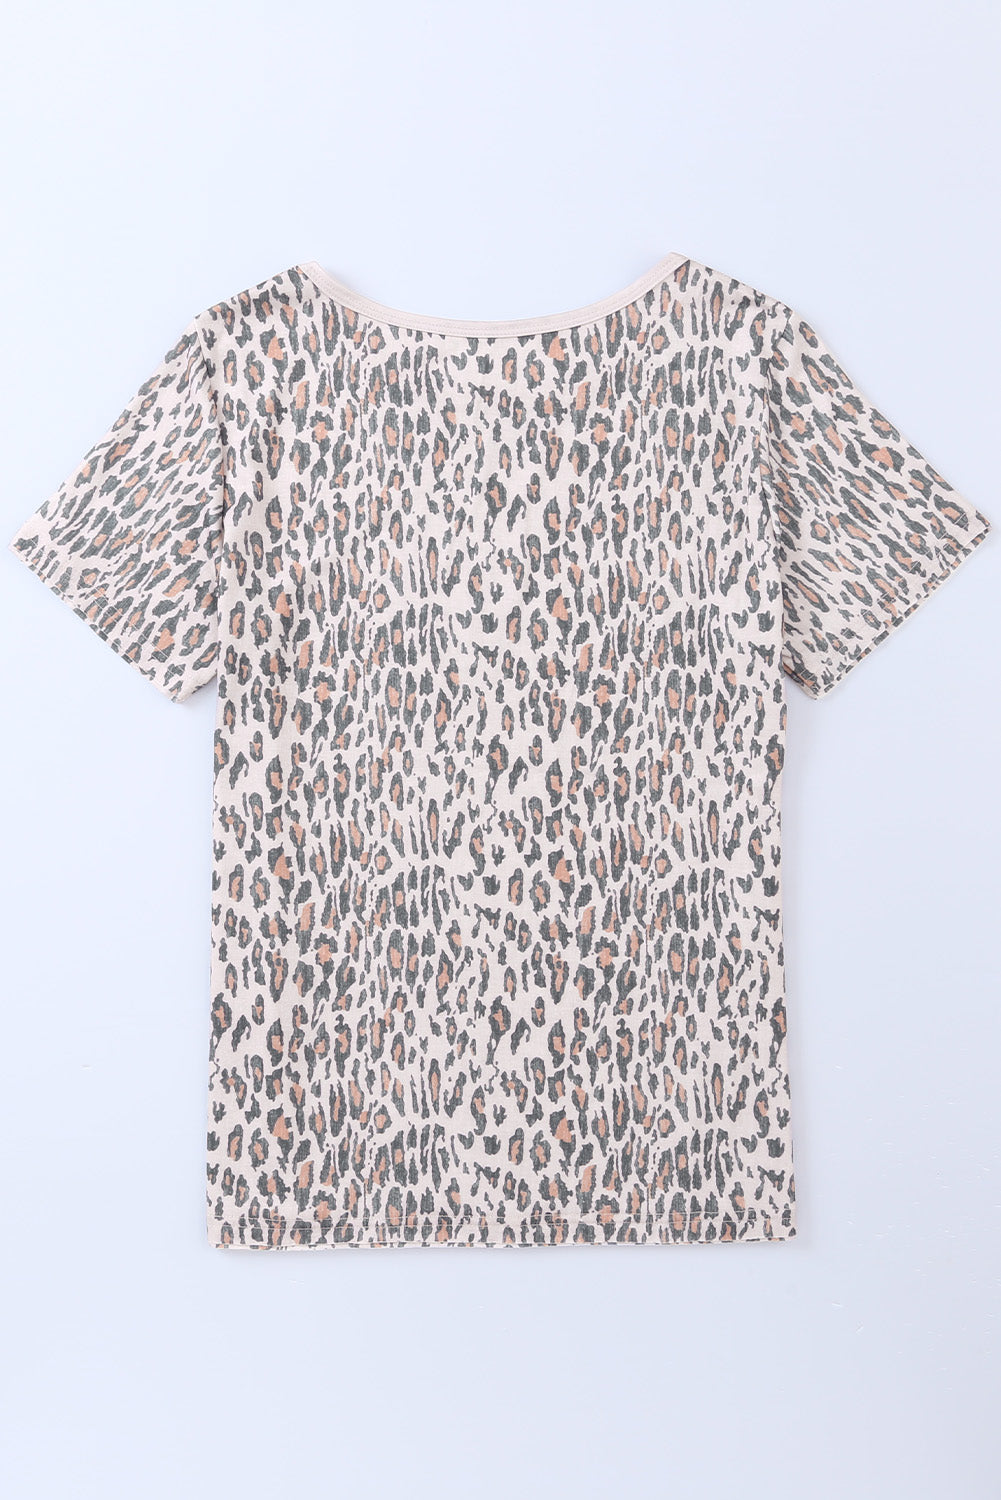 Leopardna majica kratkih rukava sa životinjskim printom